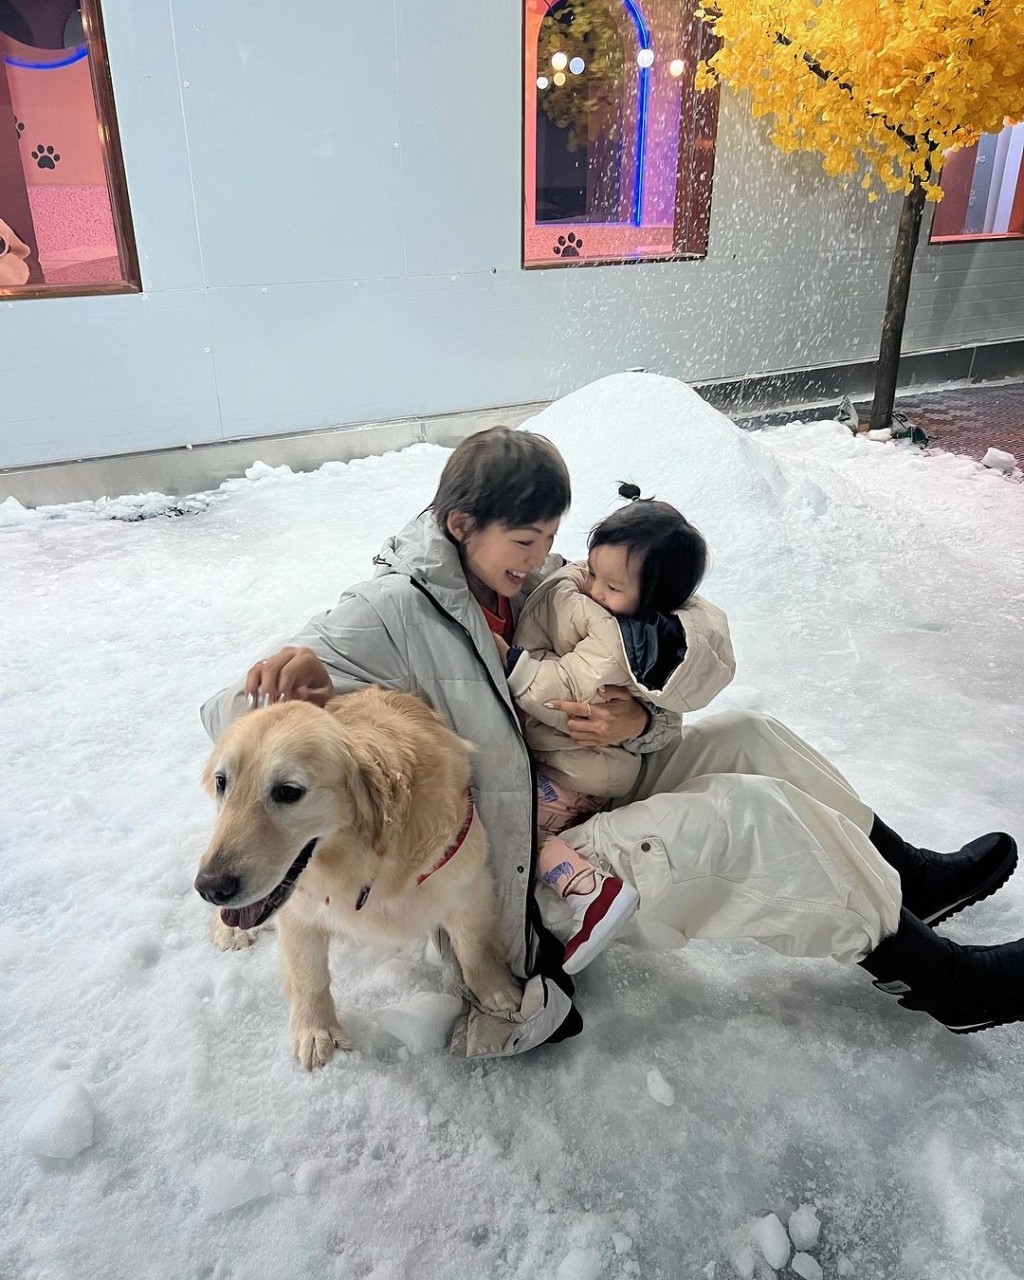 昨晚梁諾妍分享與囡囡Sir Face和愛犬Molly去玩雪的照片。